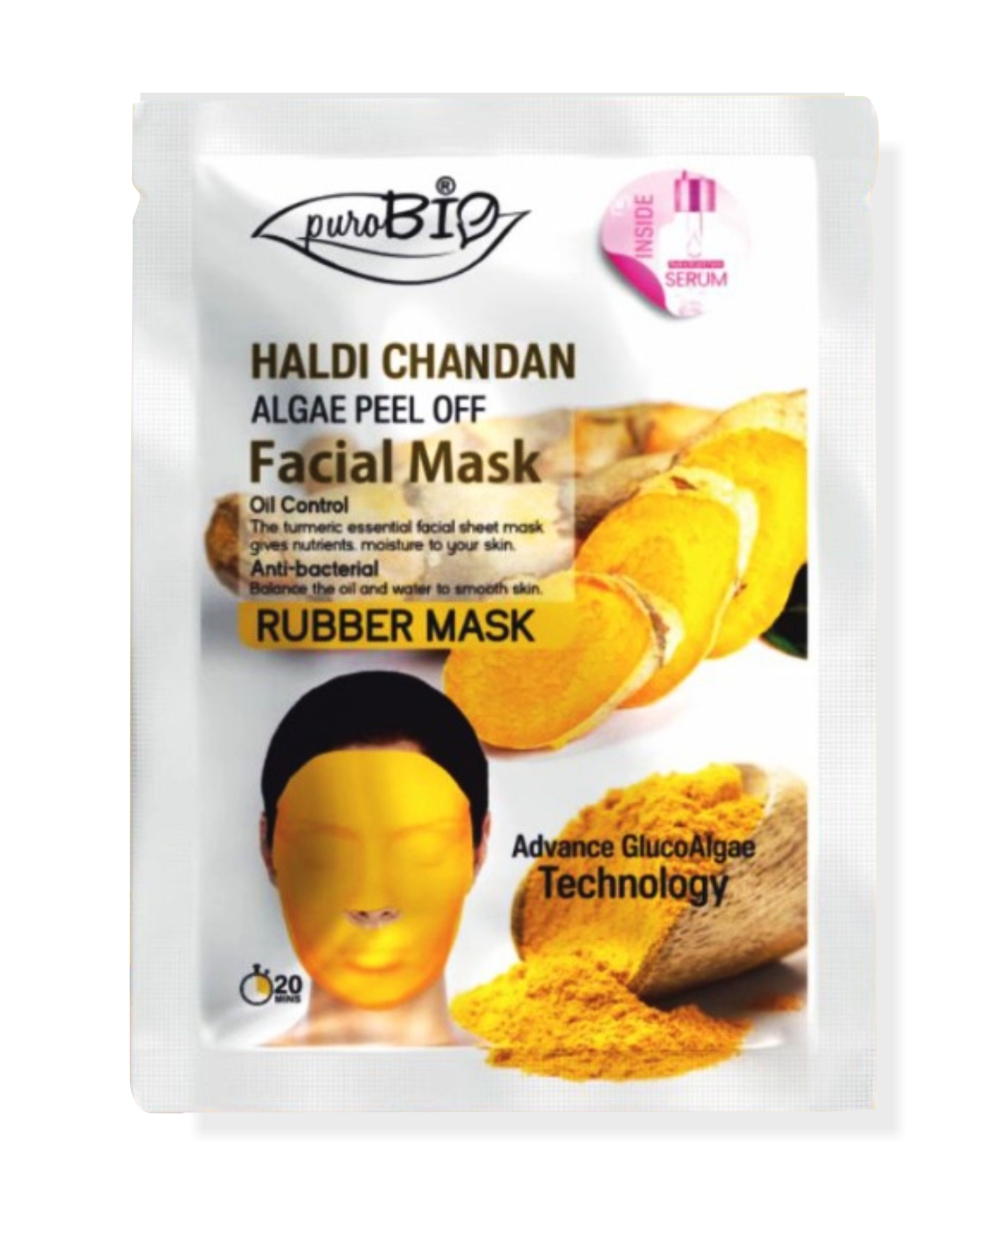 Haldi Chandan Face Mask